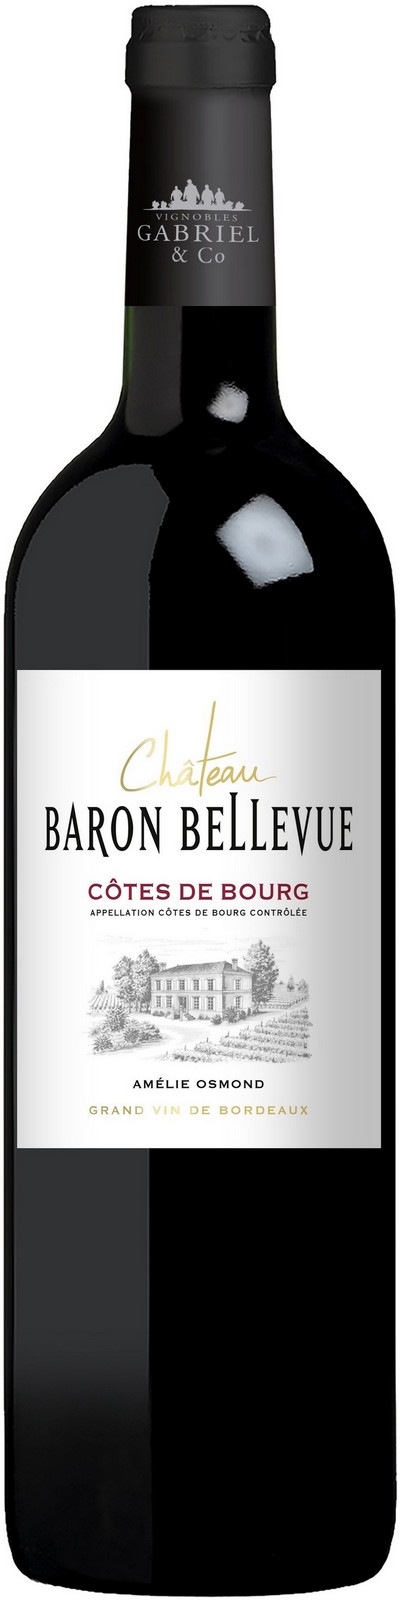 chateau-baron-bellevue-2019